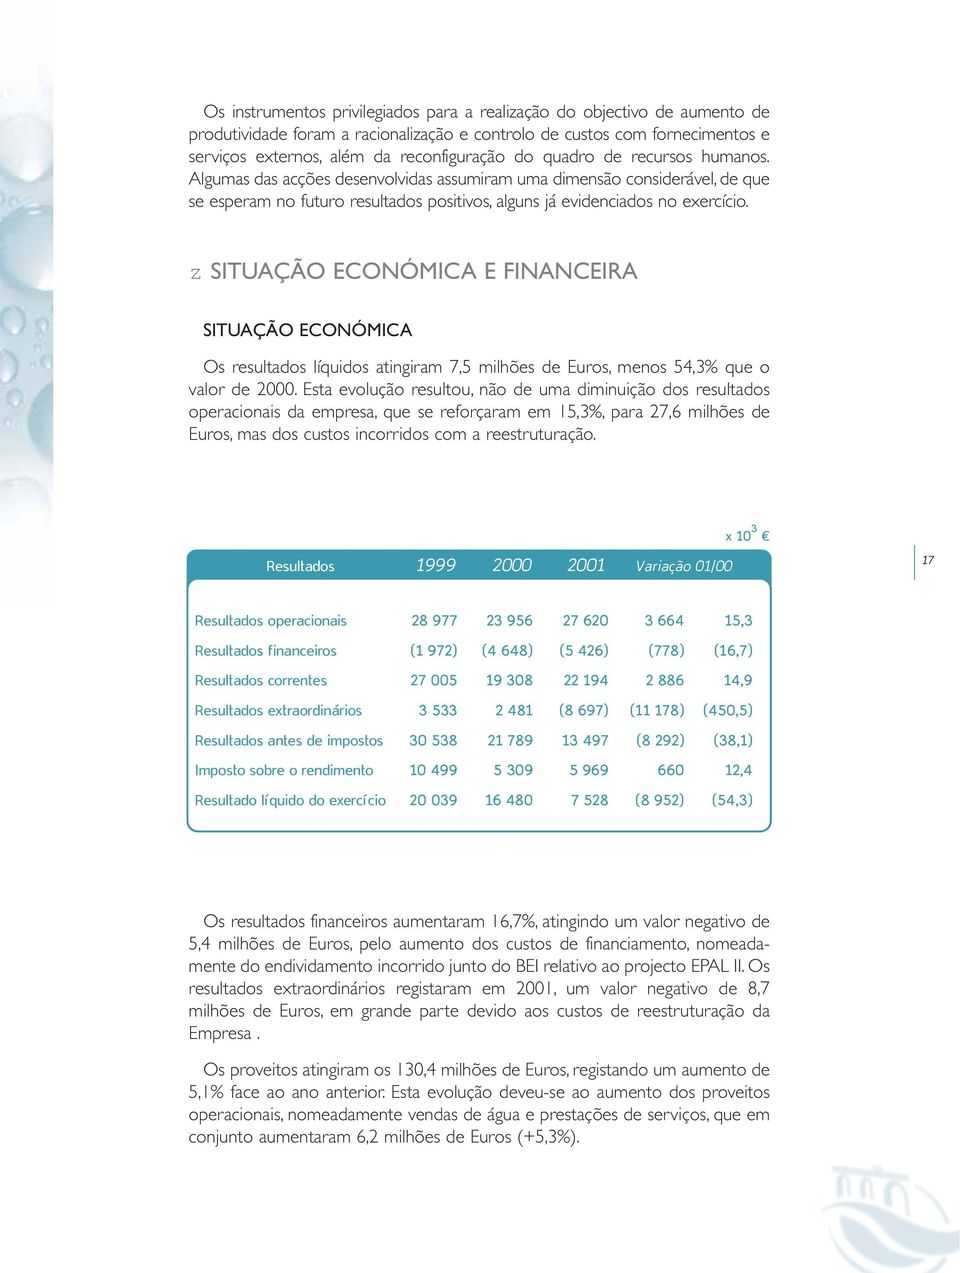 z SITUAÇÃO ECONÓMICA E FINANCEIRA SITUAÇÃO ECONÓMICA Os resultados líquidos atingiram 7,5 milhões de Euros, menos 54,3% que o valor de 2000.